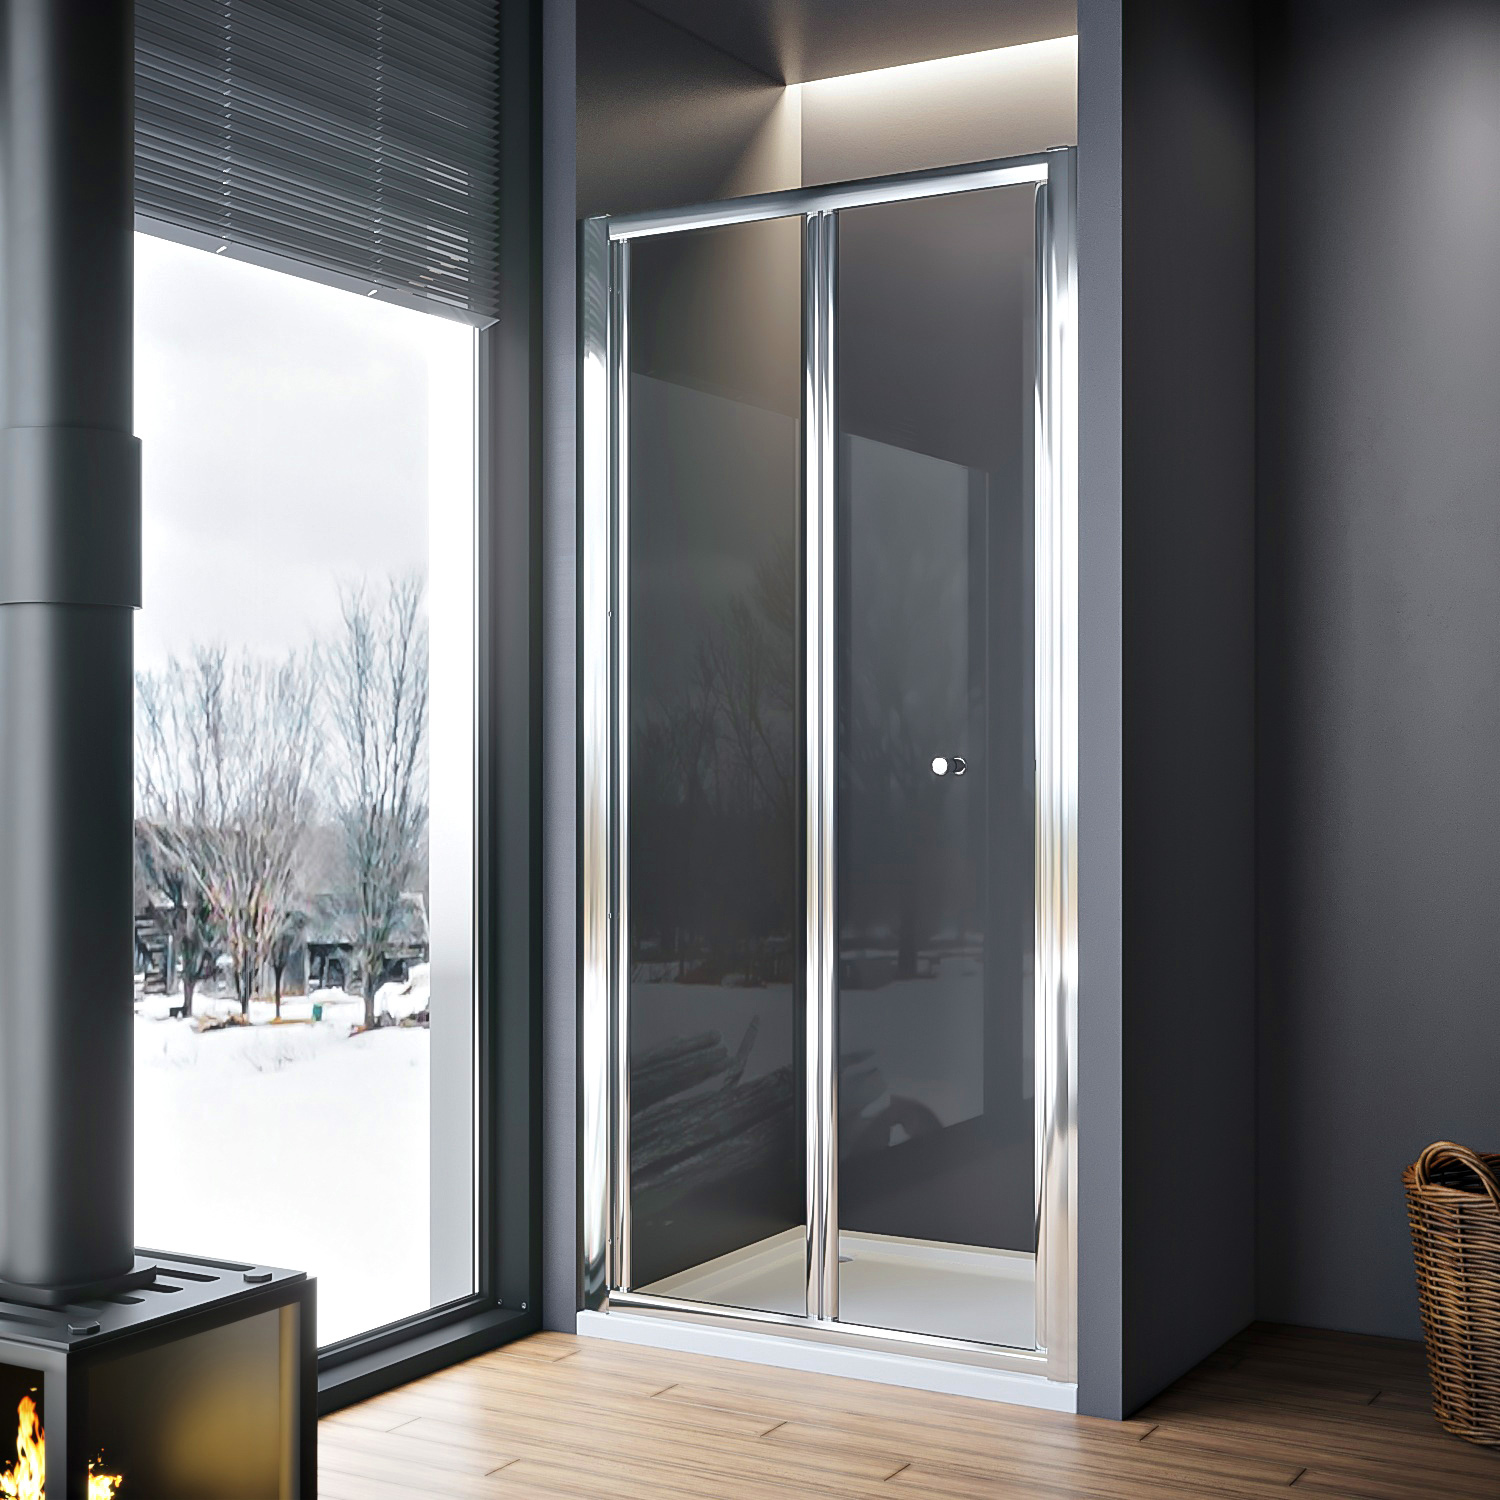 Bi Fold Shower Door Features：